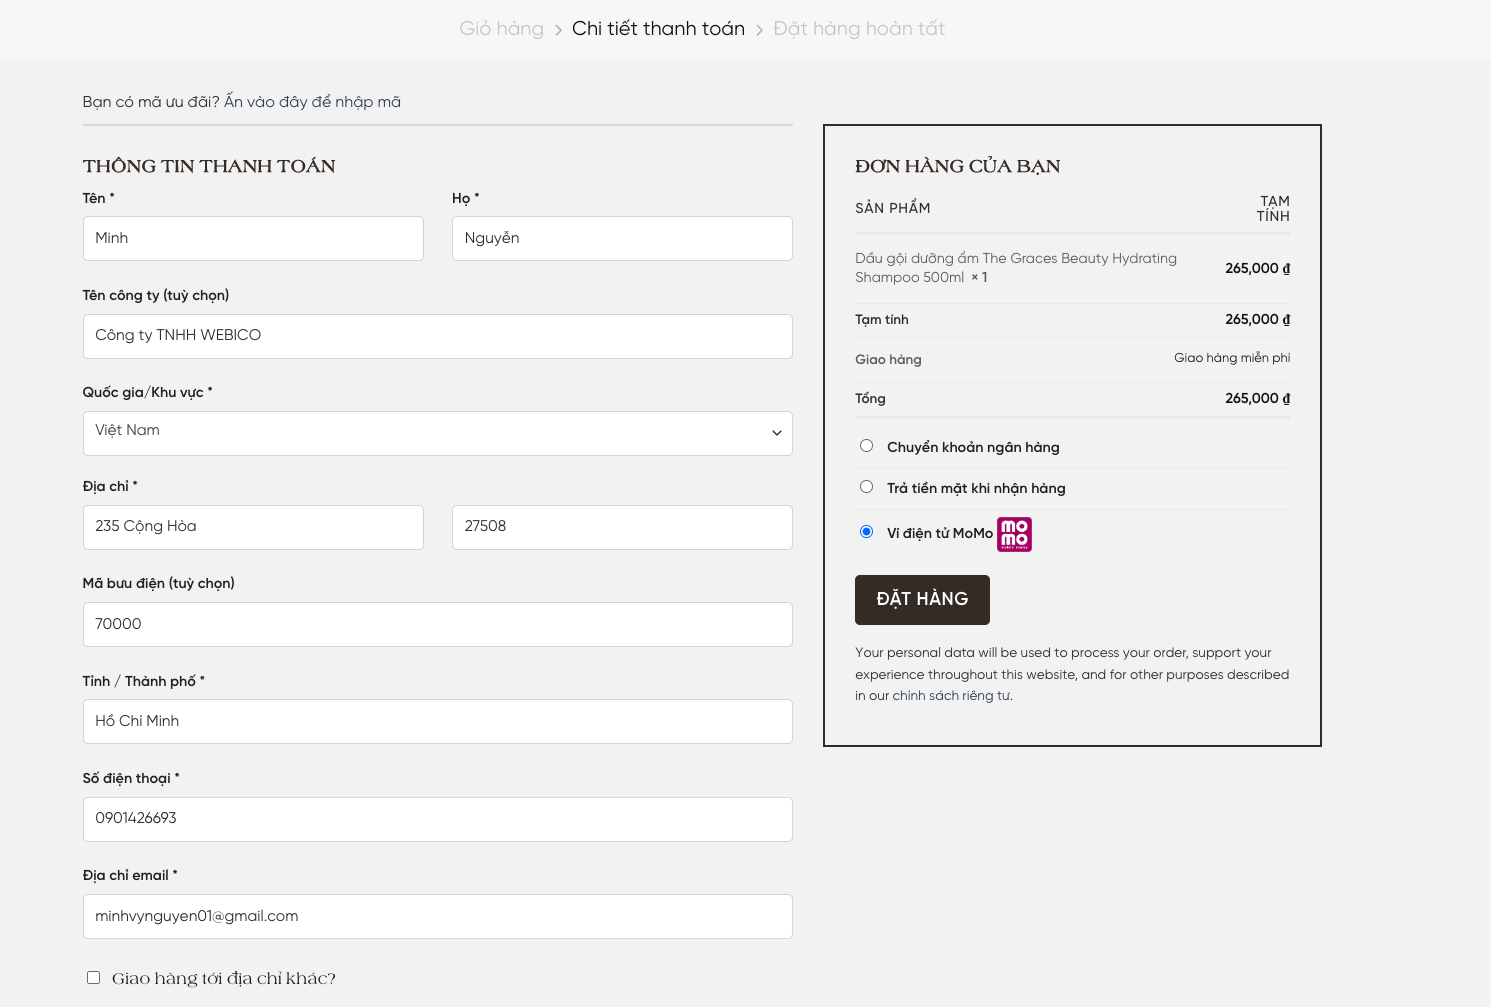 screenshot-2.png Đặt hàng với hình thức thanh toán qua MoMo